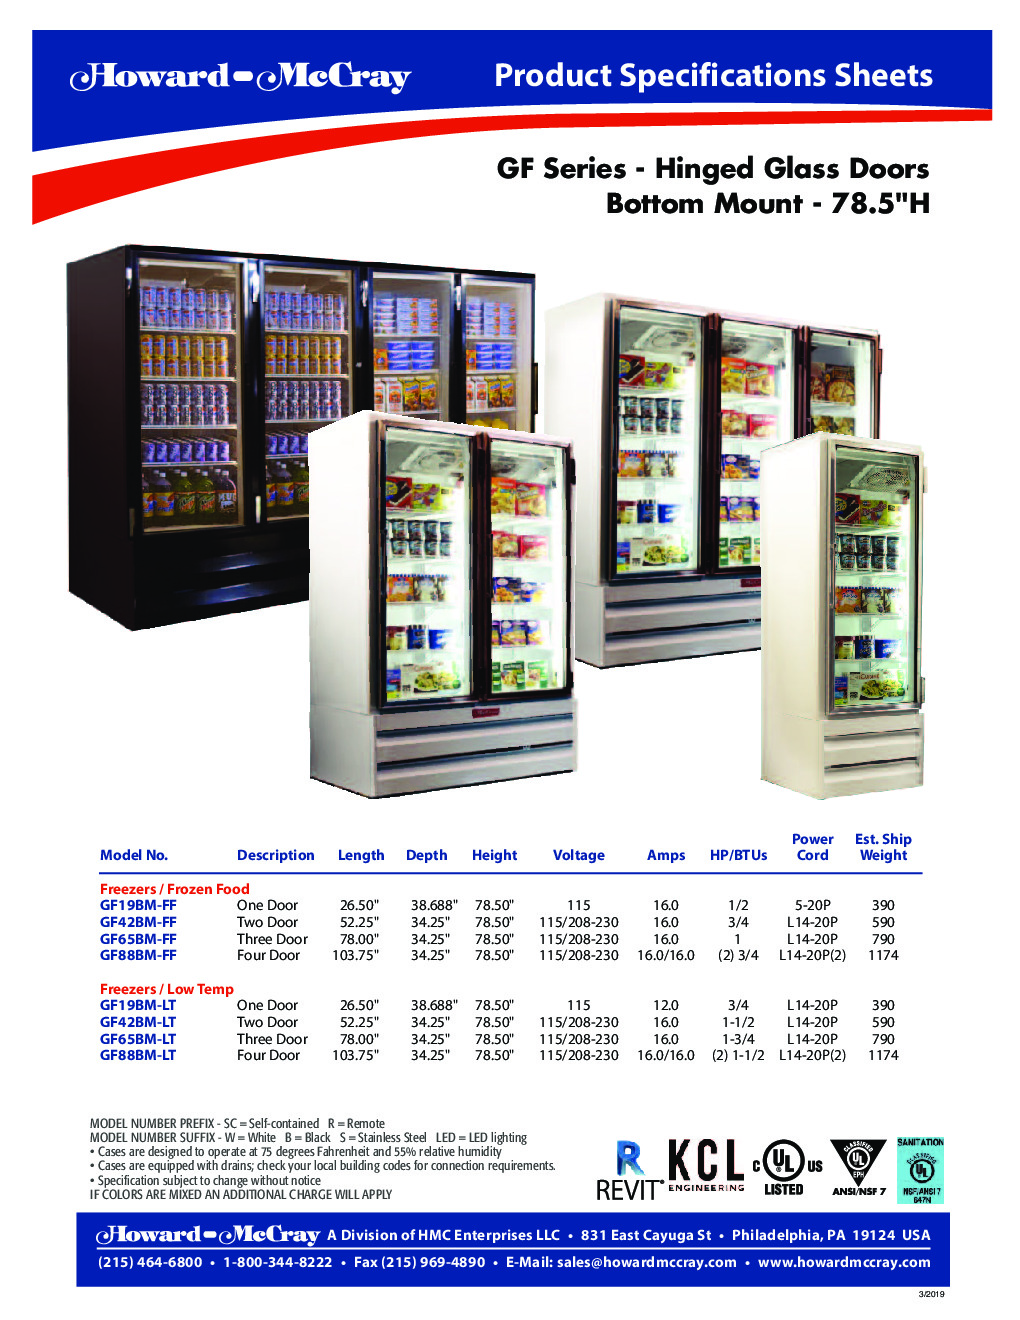 Howard-McCray GF65BM-S-LT Merchandiser Freezer